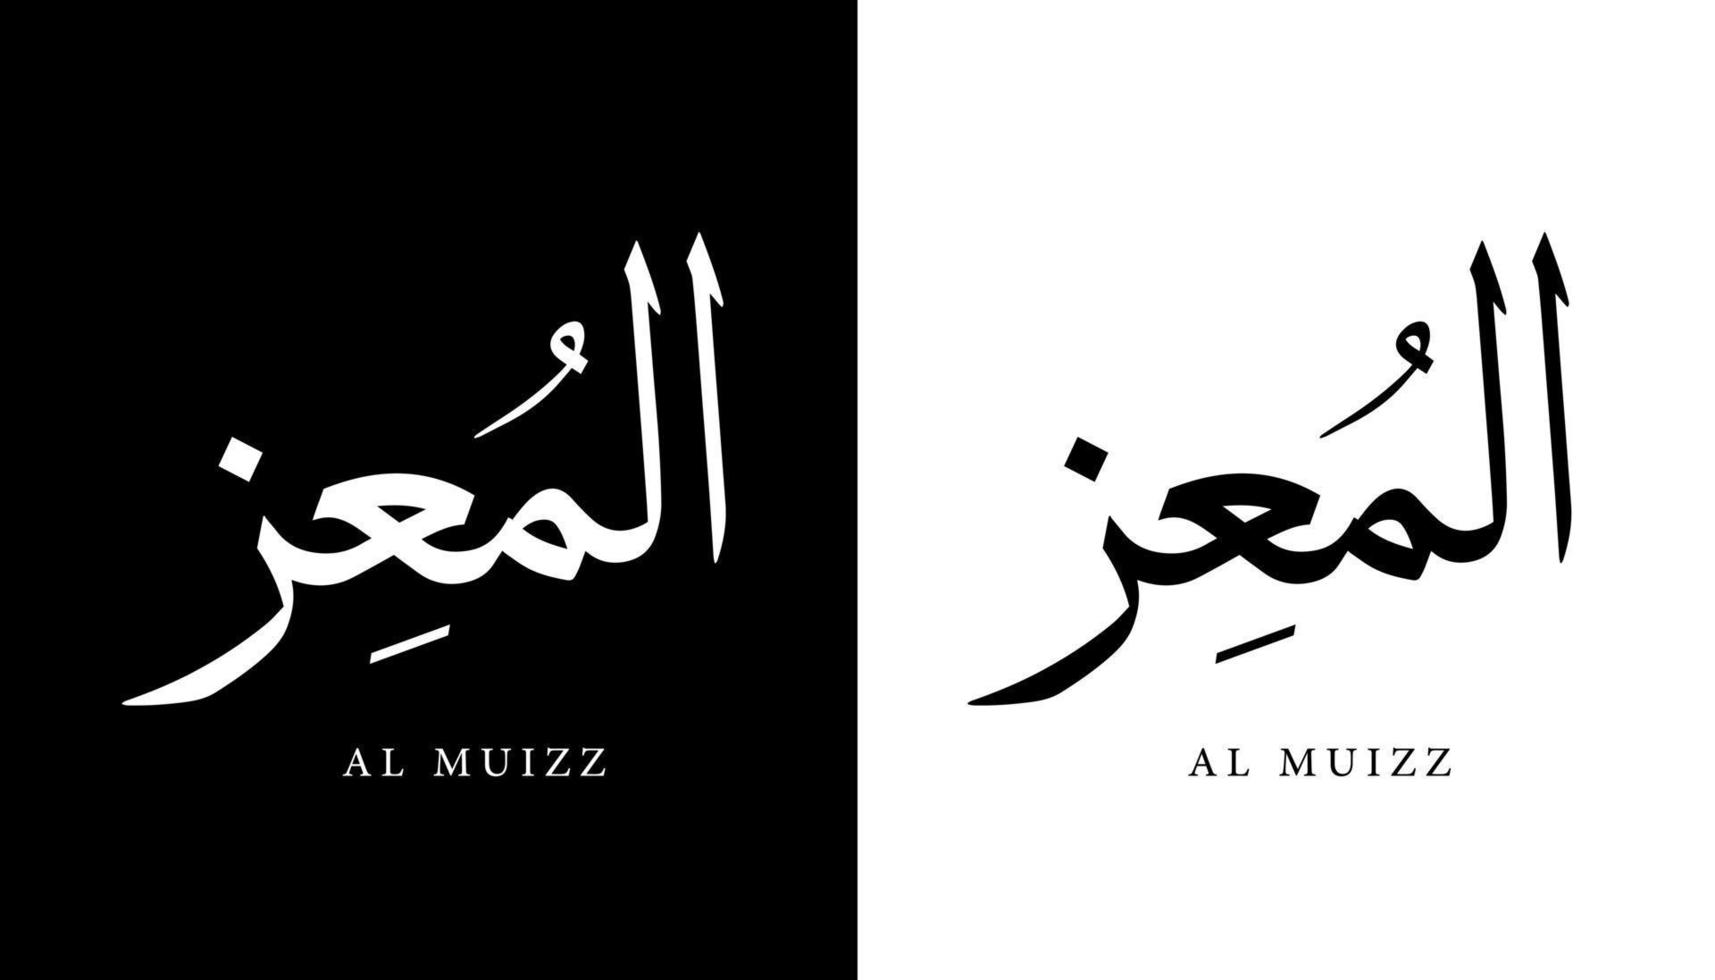 nome della calligrafia araba tradotto 'al muizz' lettere arabe alfabeto font lettering logo islamico illustrazione vettoriale